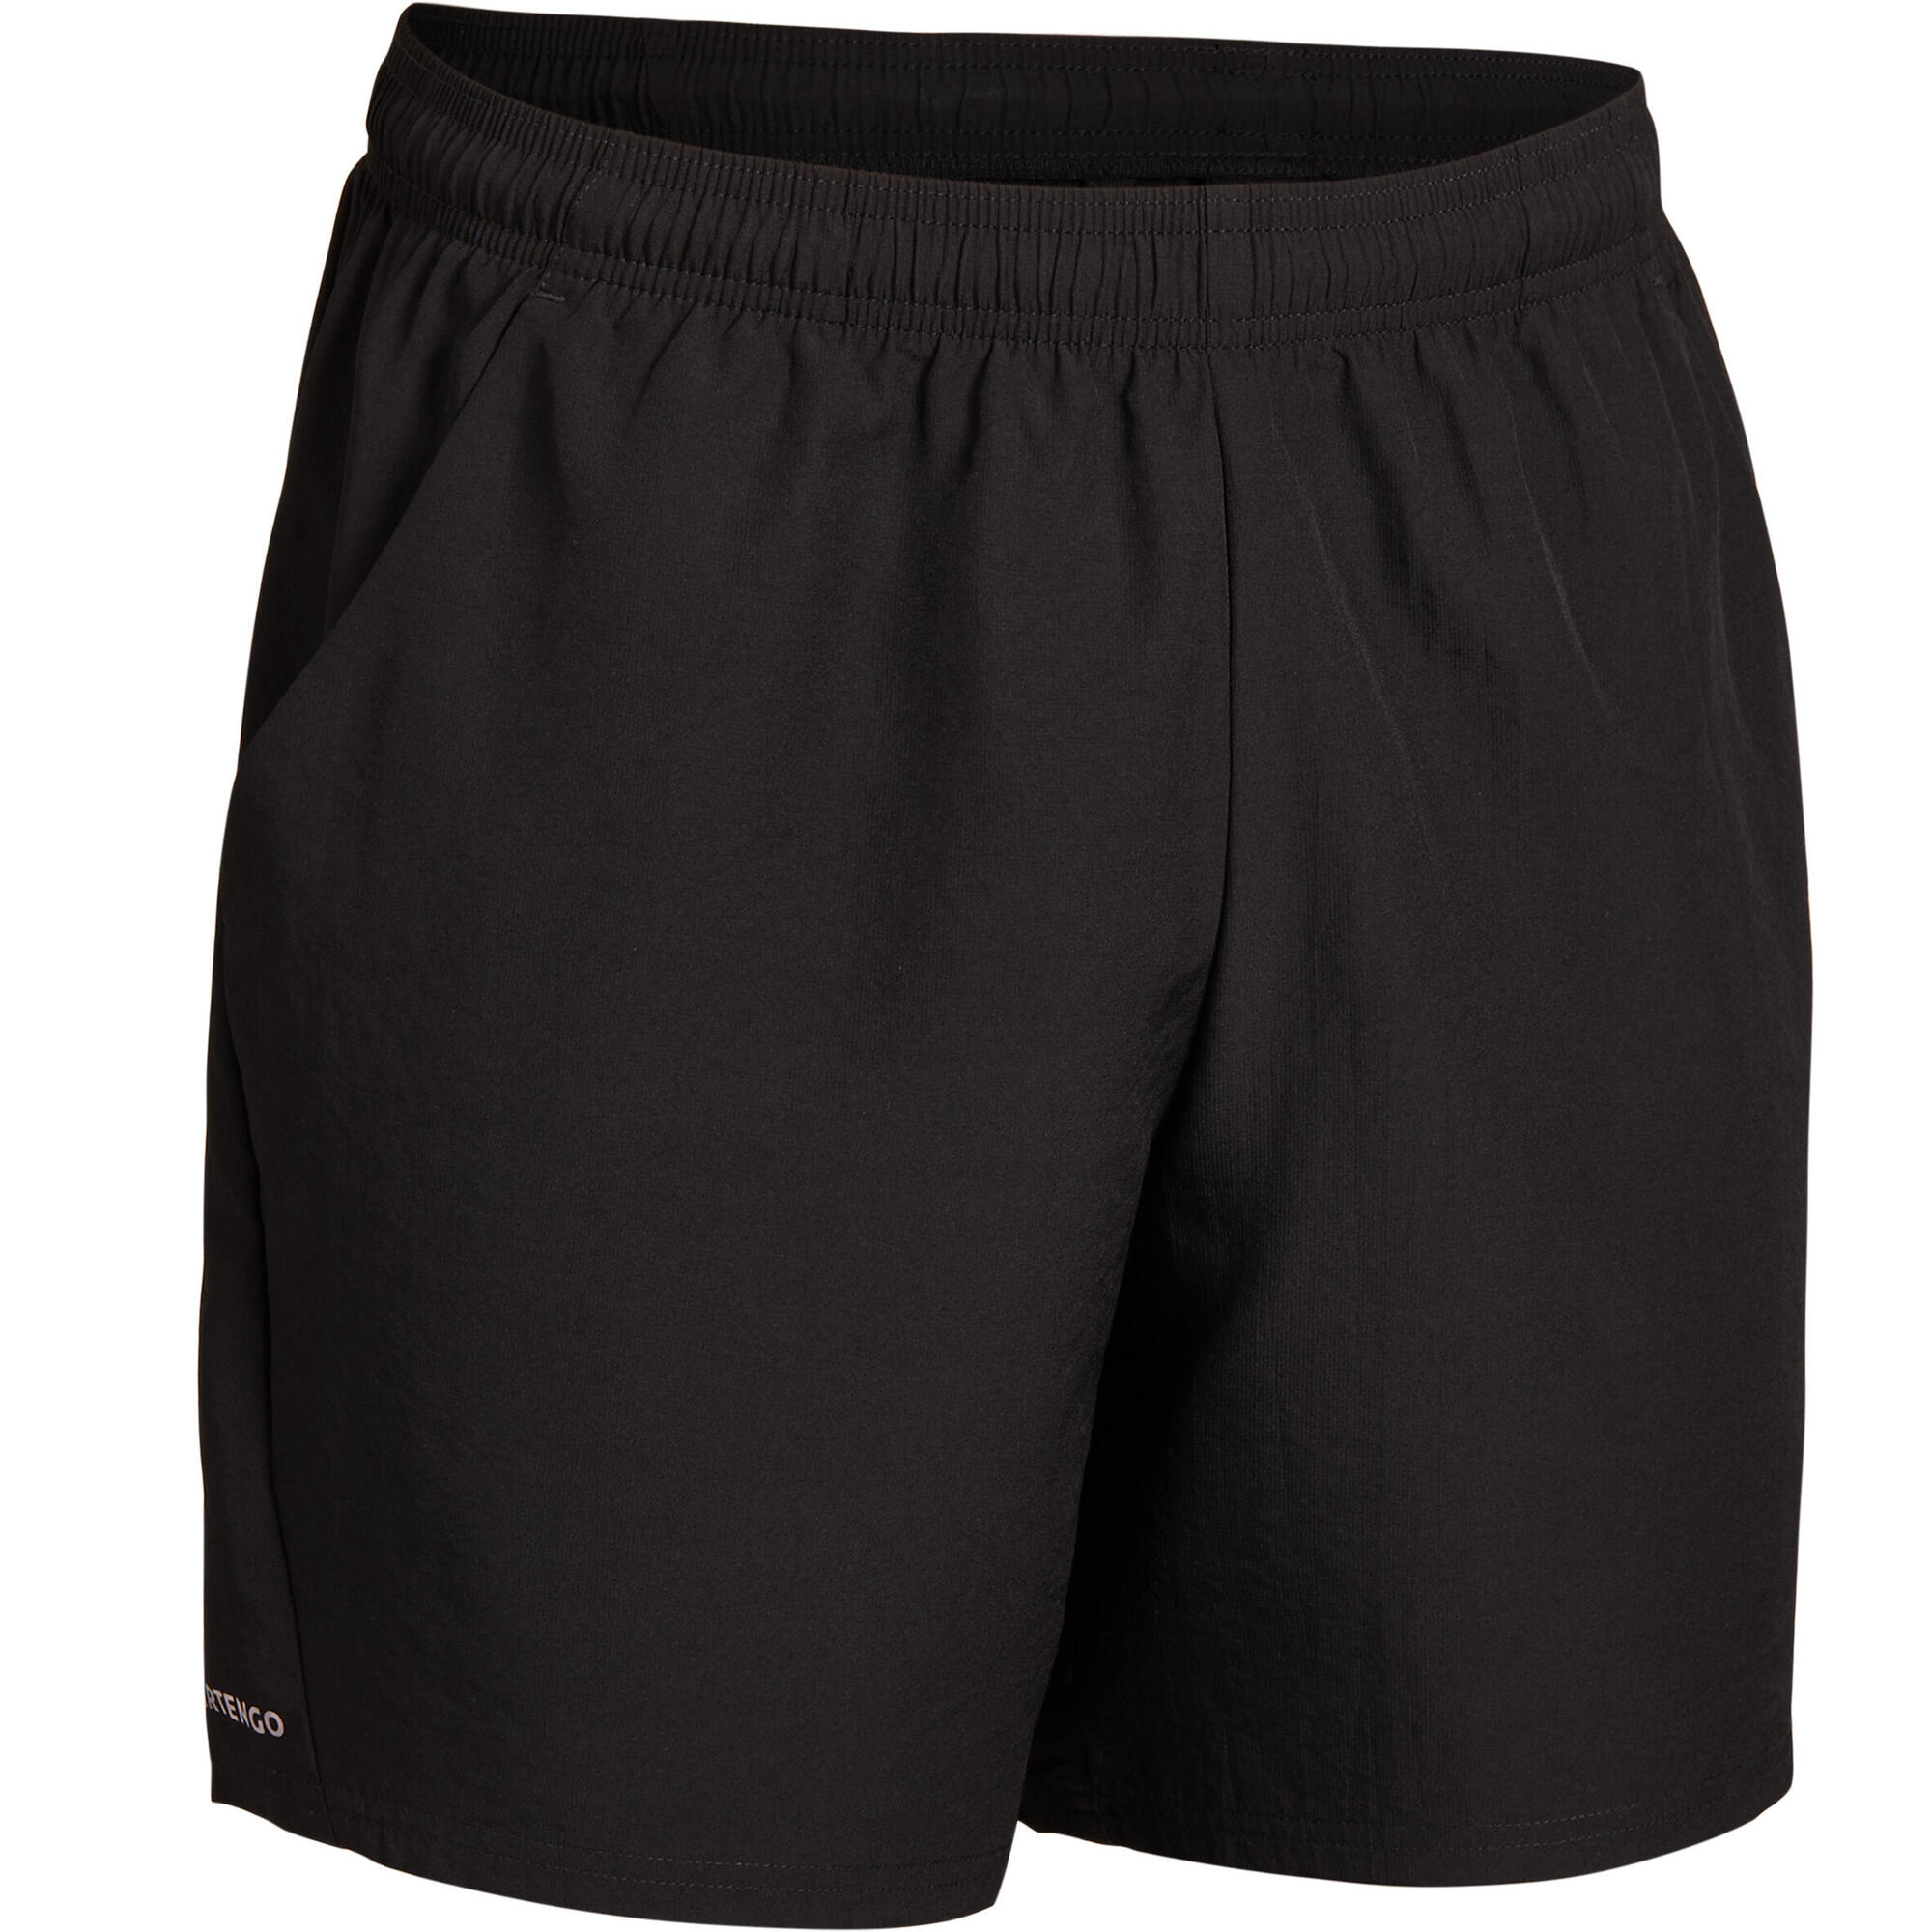 Tennis Shorts Dry TSH 100 - Black | artengo